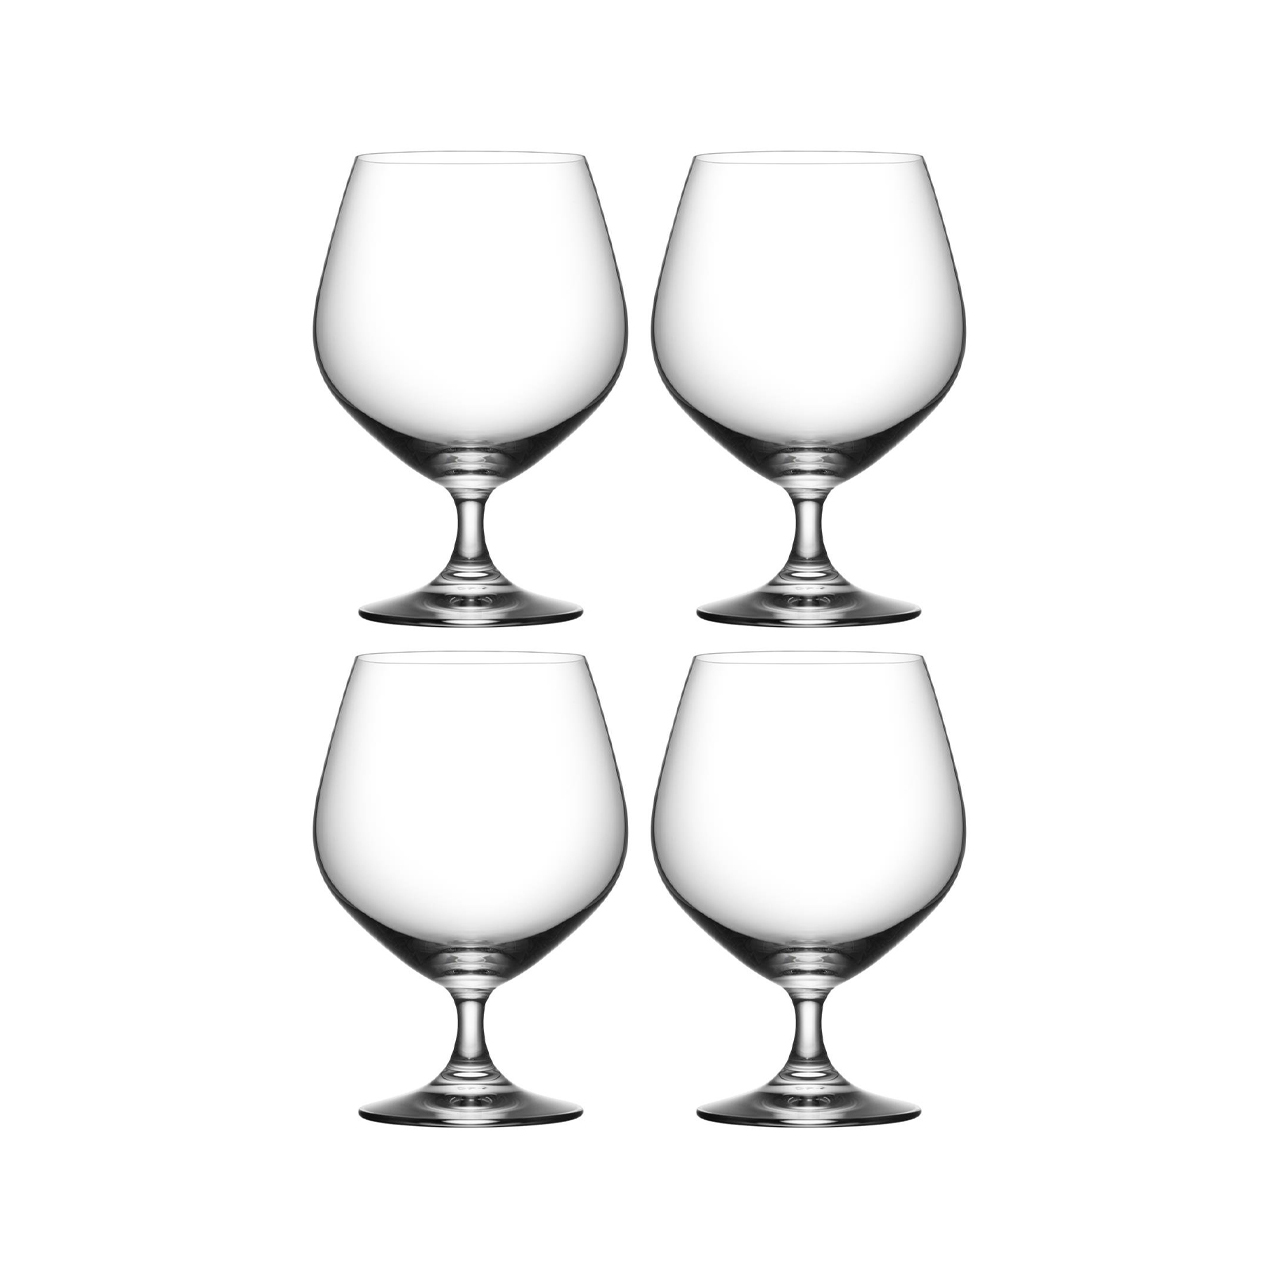 https://www.nordicnest.com/assets/blobs/orrefors-cognac-prestige-cognac-glasses-4-pack-50-cl/29317-01_1_ProductImageMain-a308890465.jpeg